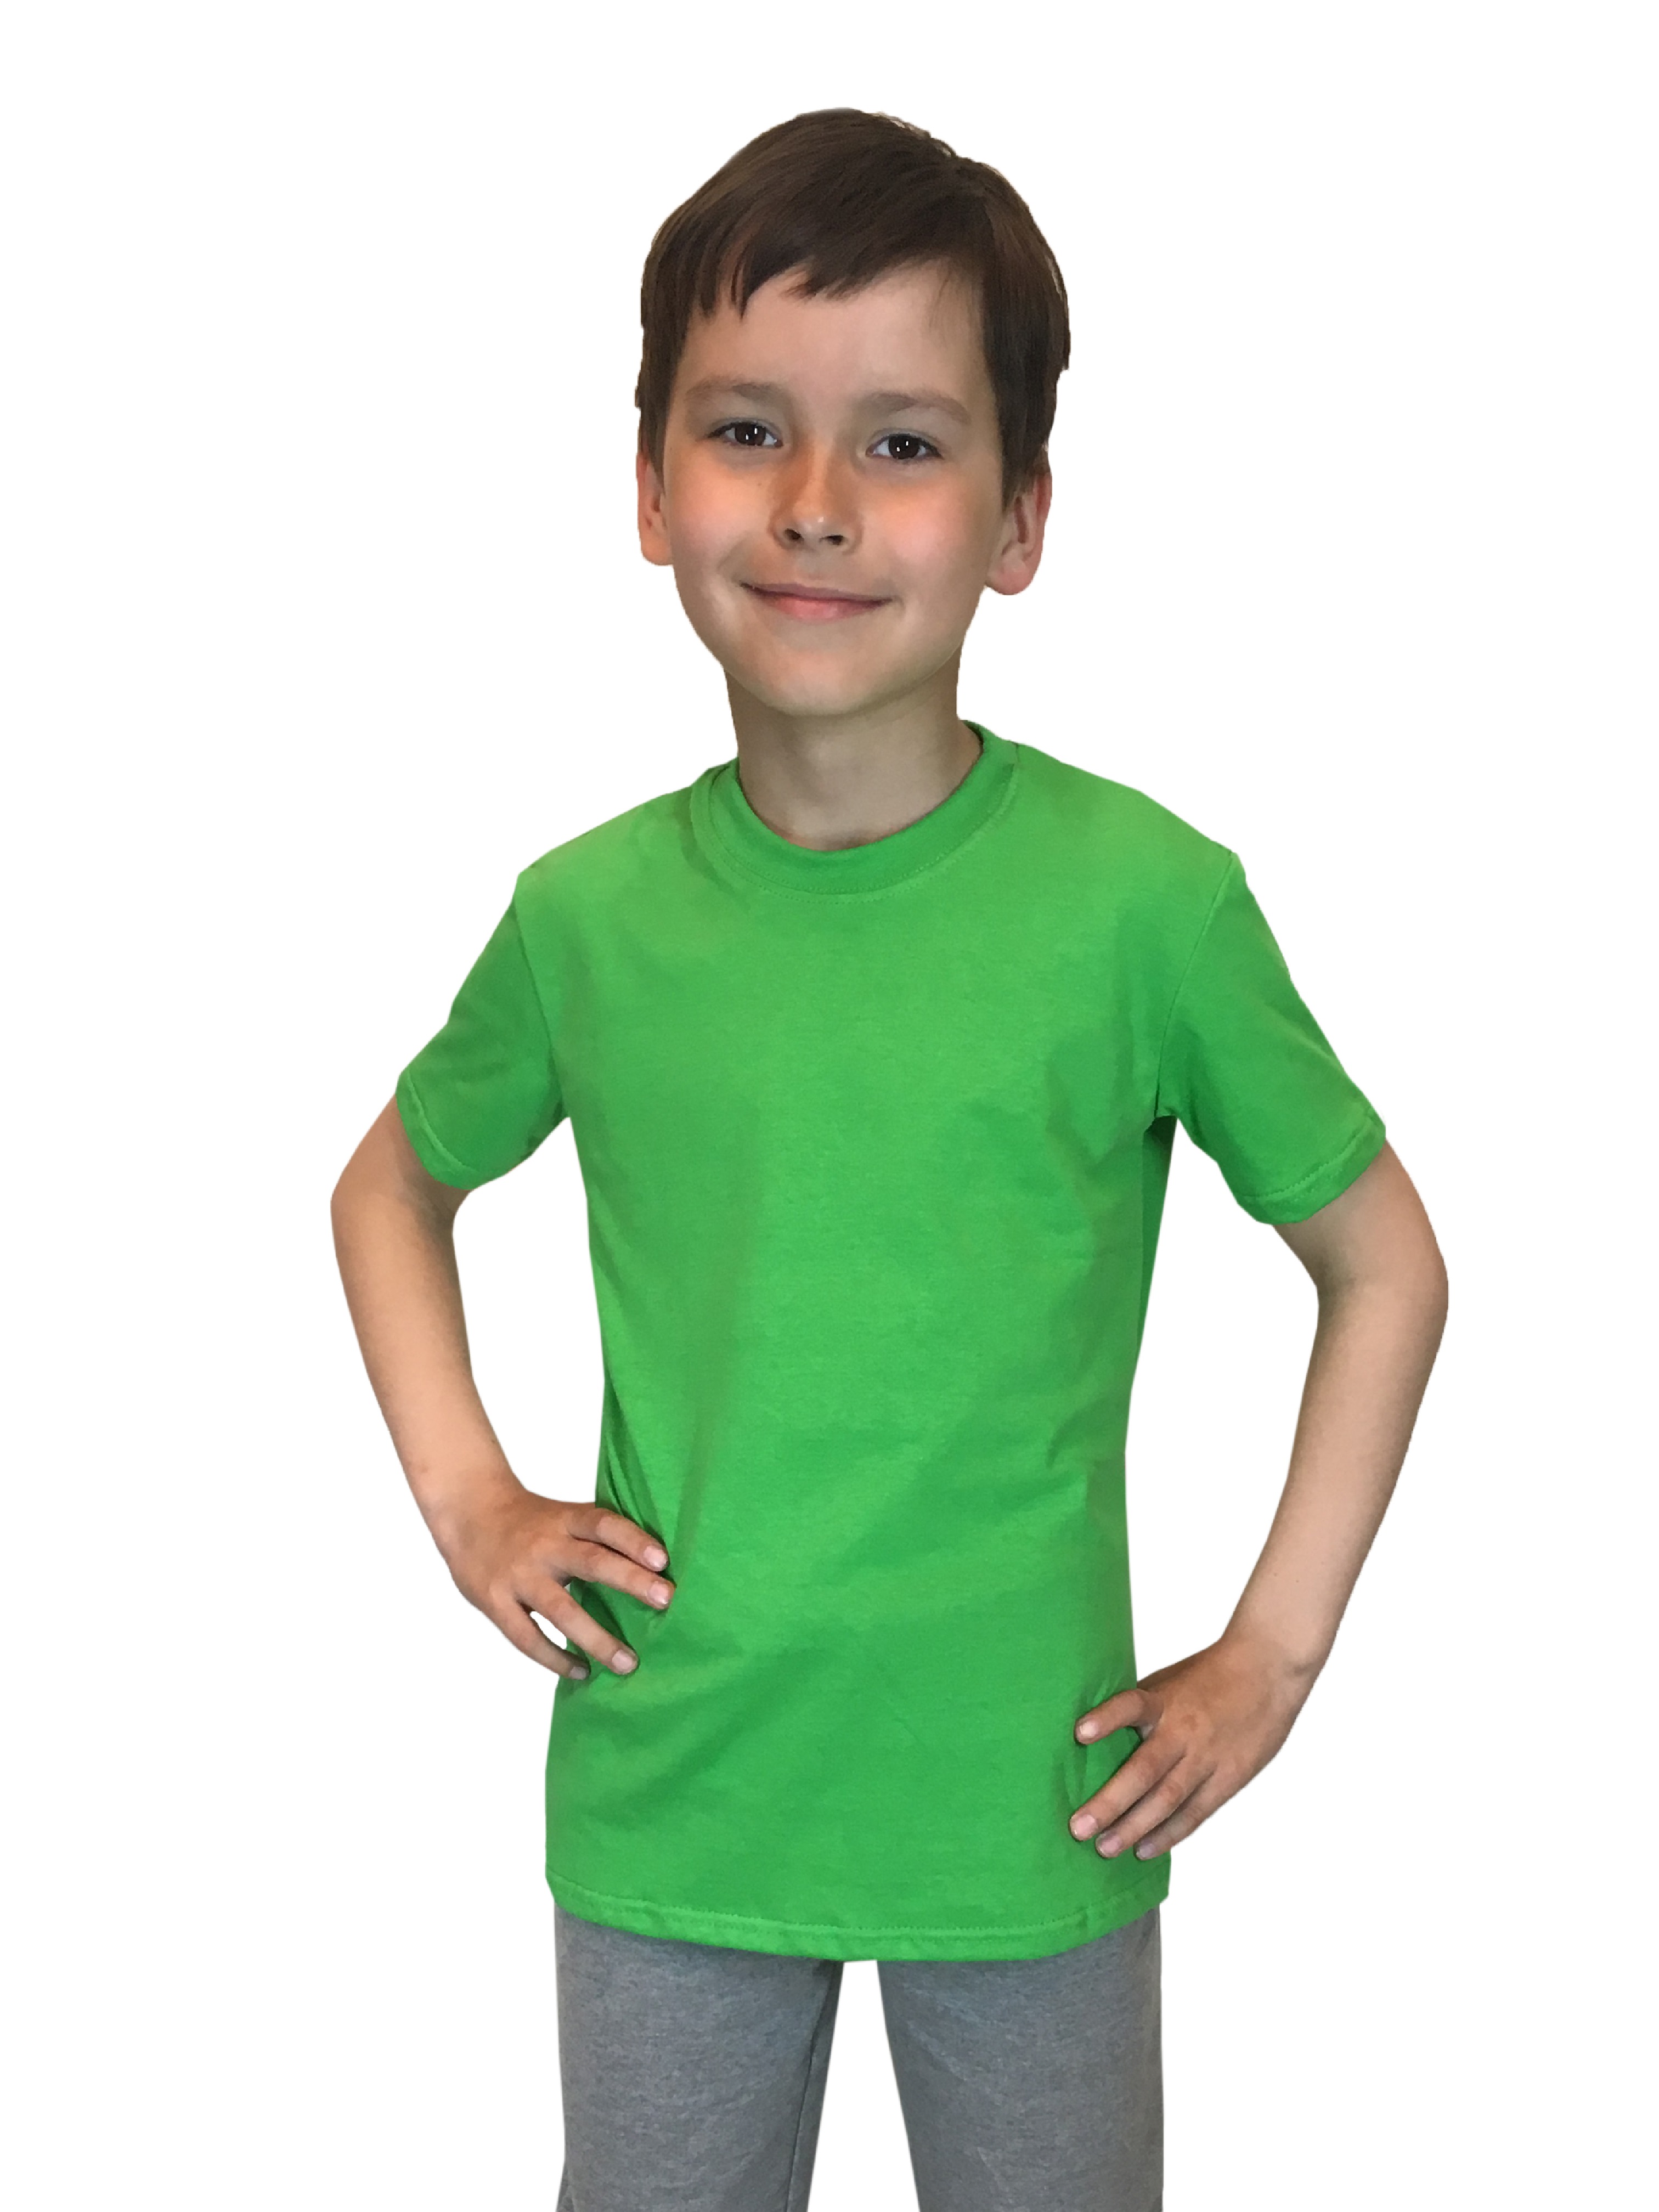 Футболка детская Детрик, зеленый размер 116, Ф-1-65